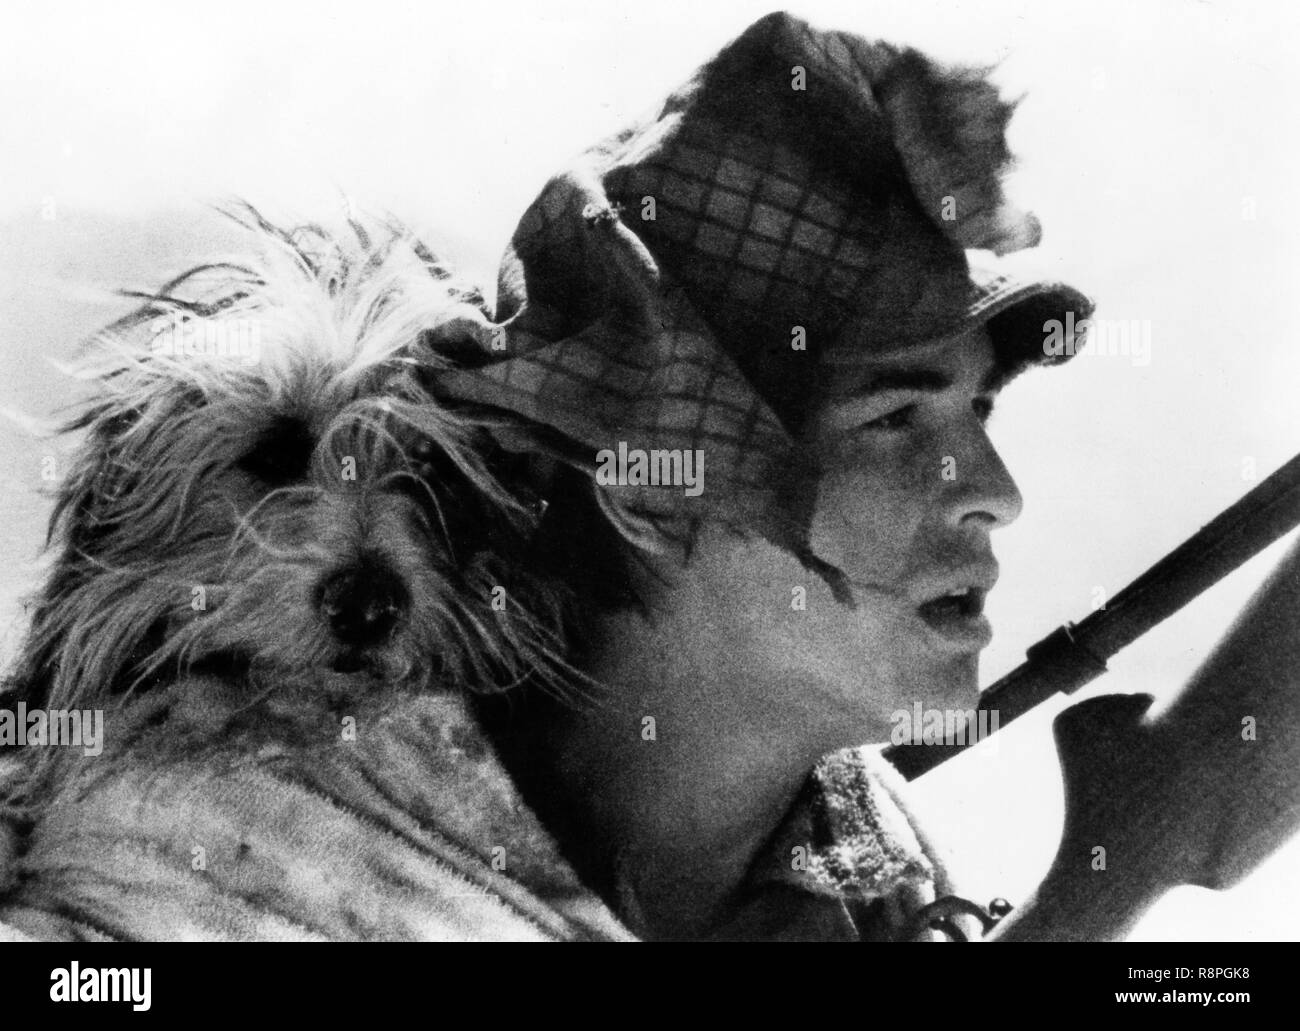 Don Johnson, "Un muchacho y su perro" (1975) LQ/JAF Productions Archivo de referencia # 33635 602 THA Foto de stock